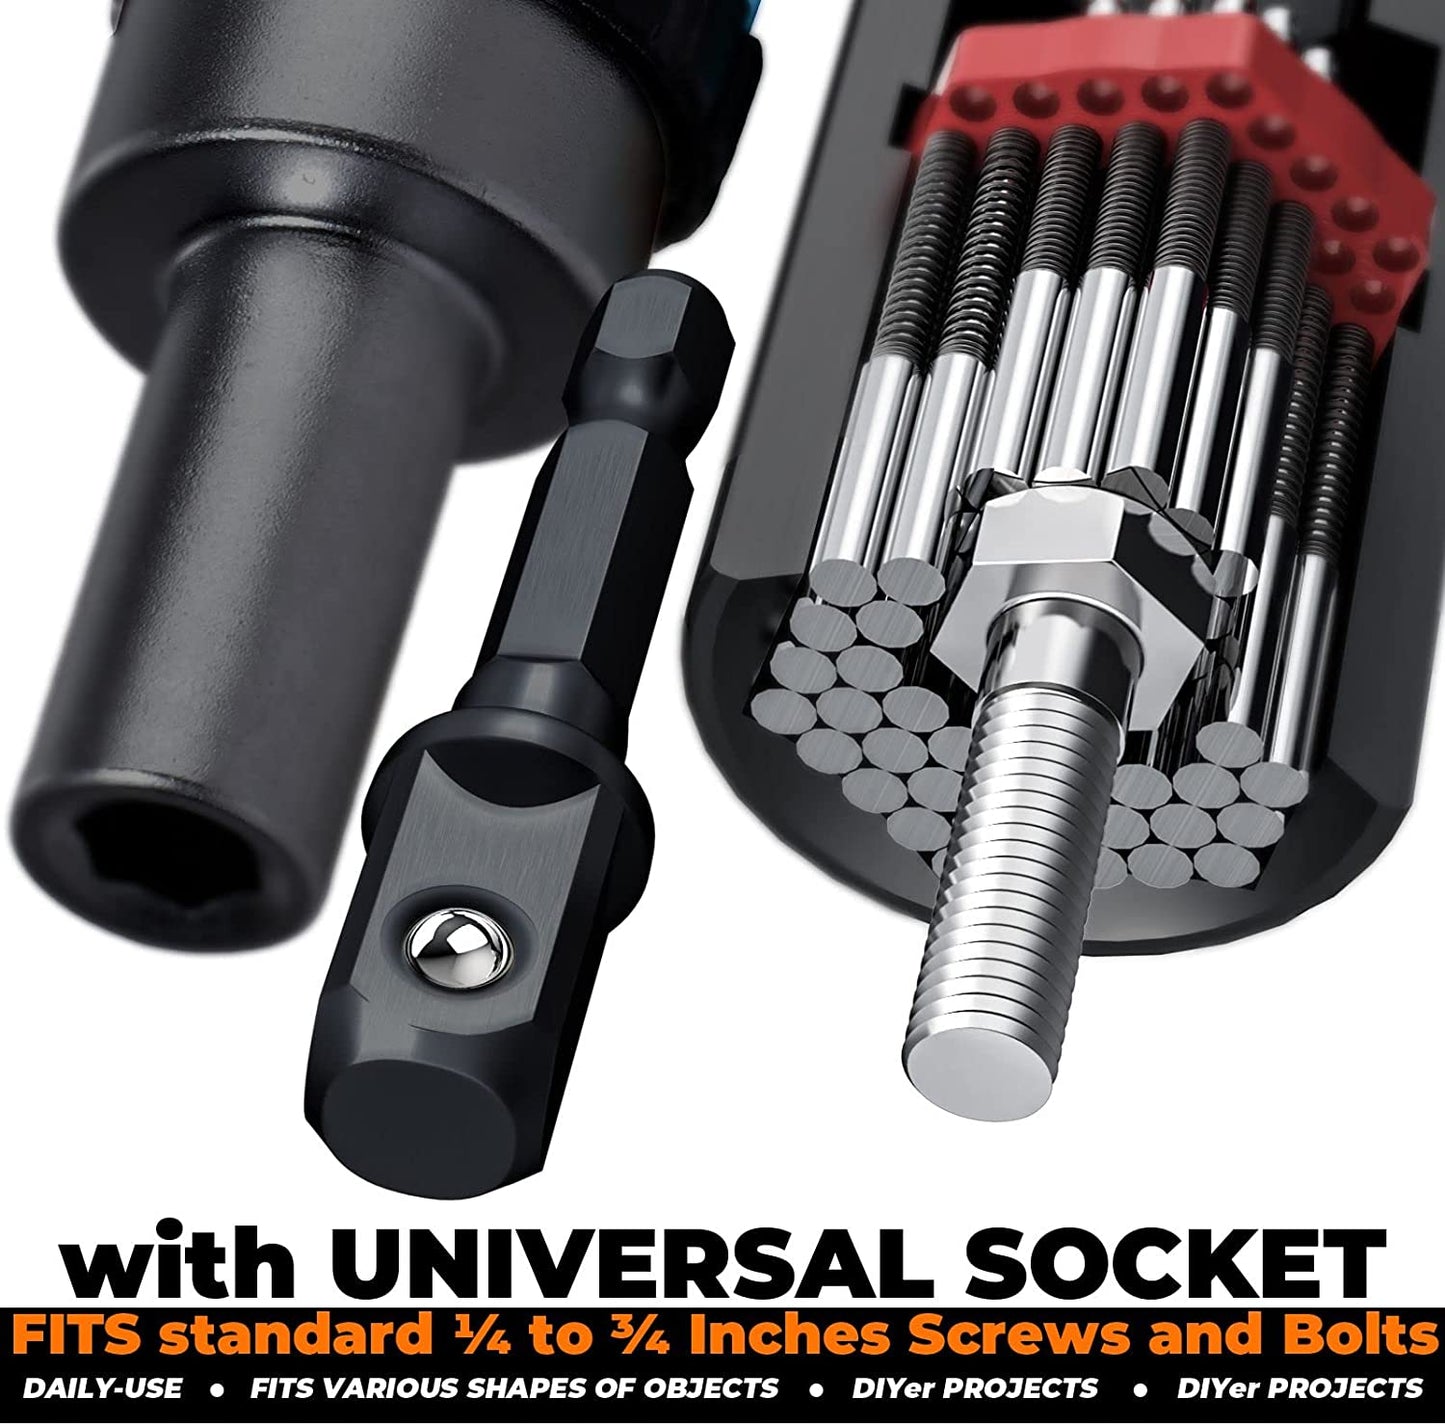 Universal Socket Tool Set